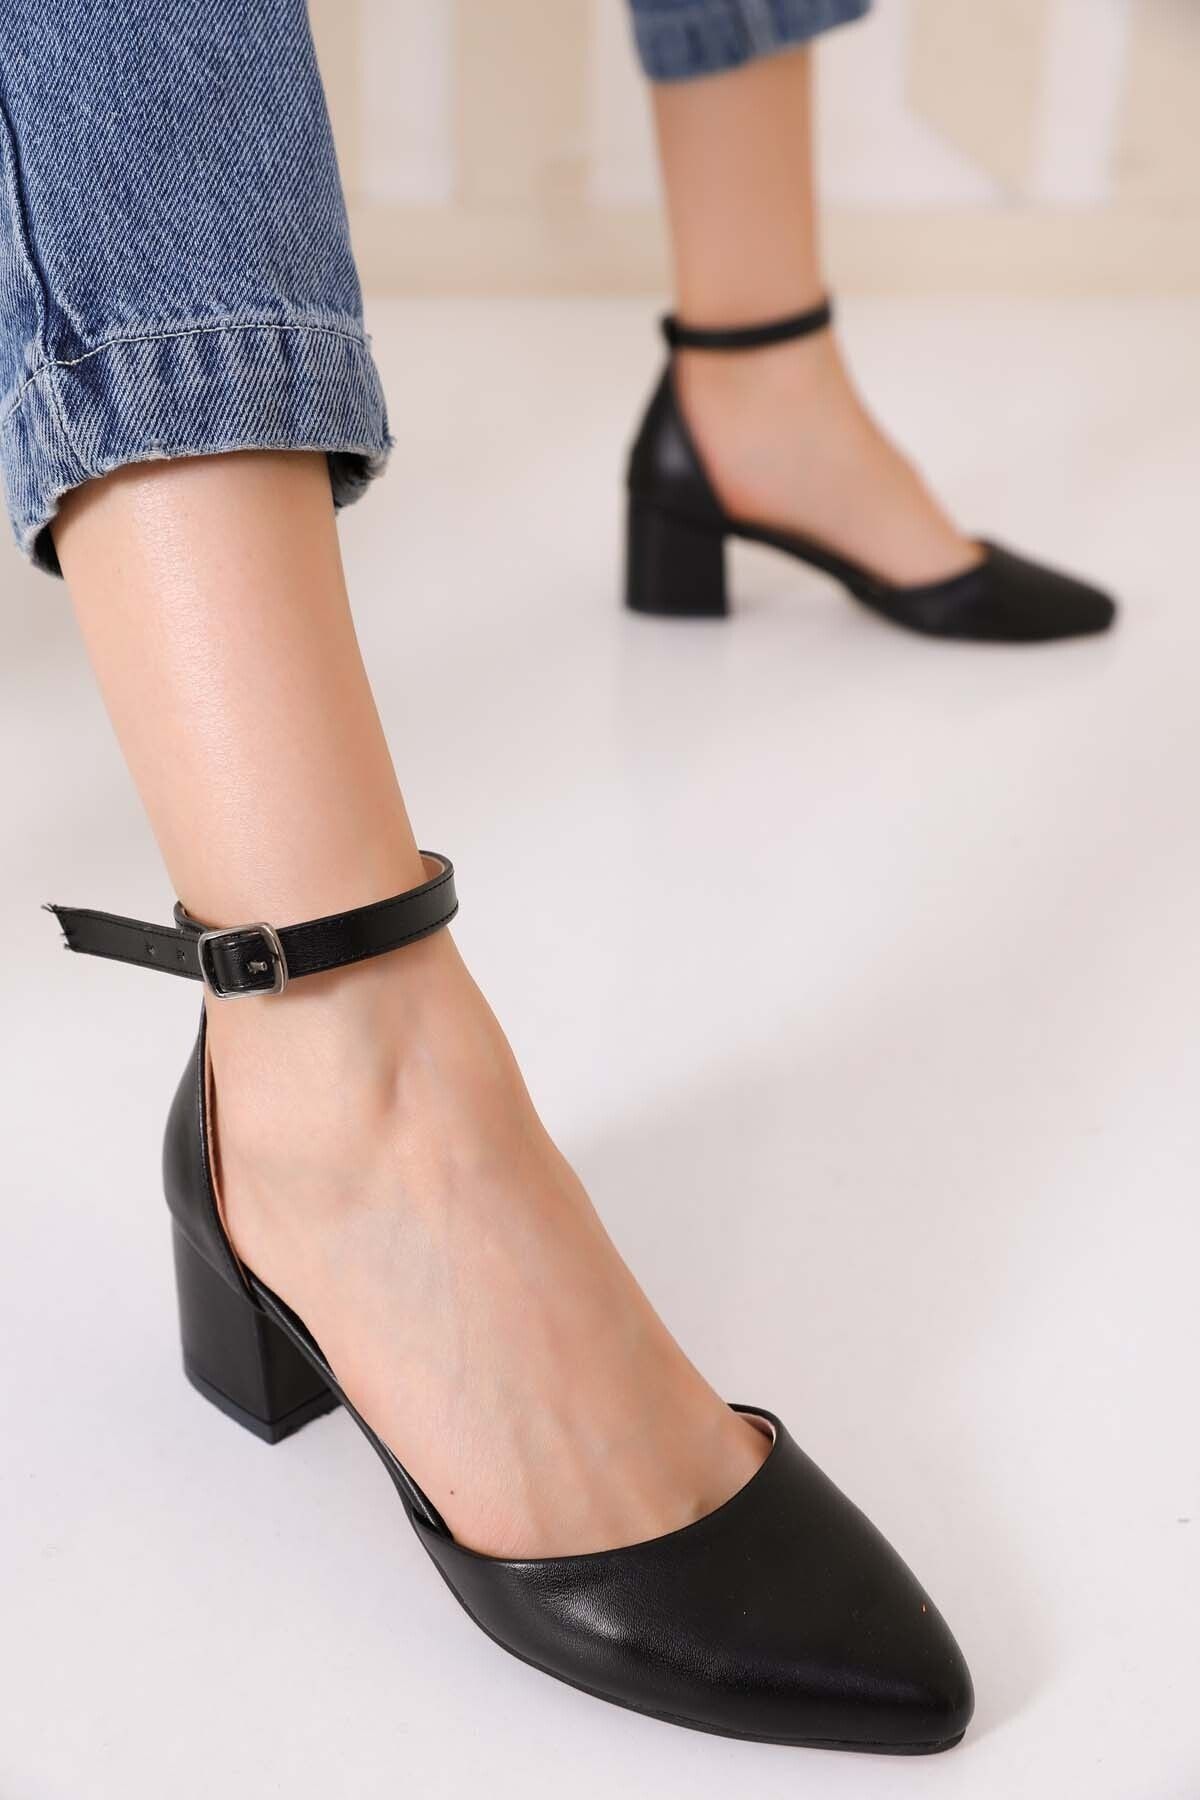 NOVİNS Kadın Siyah Yanı Açık Klasik Topuklu Ayakkabı